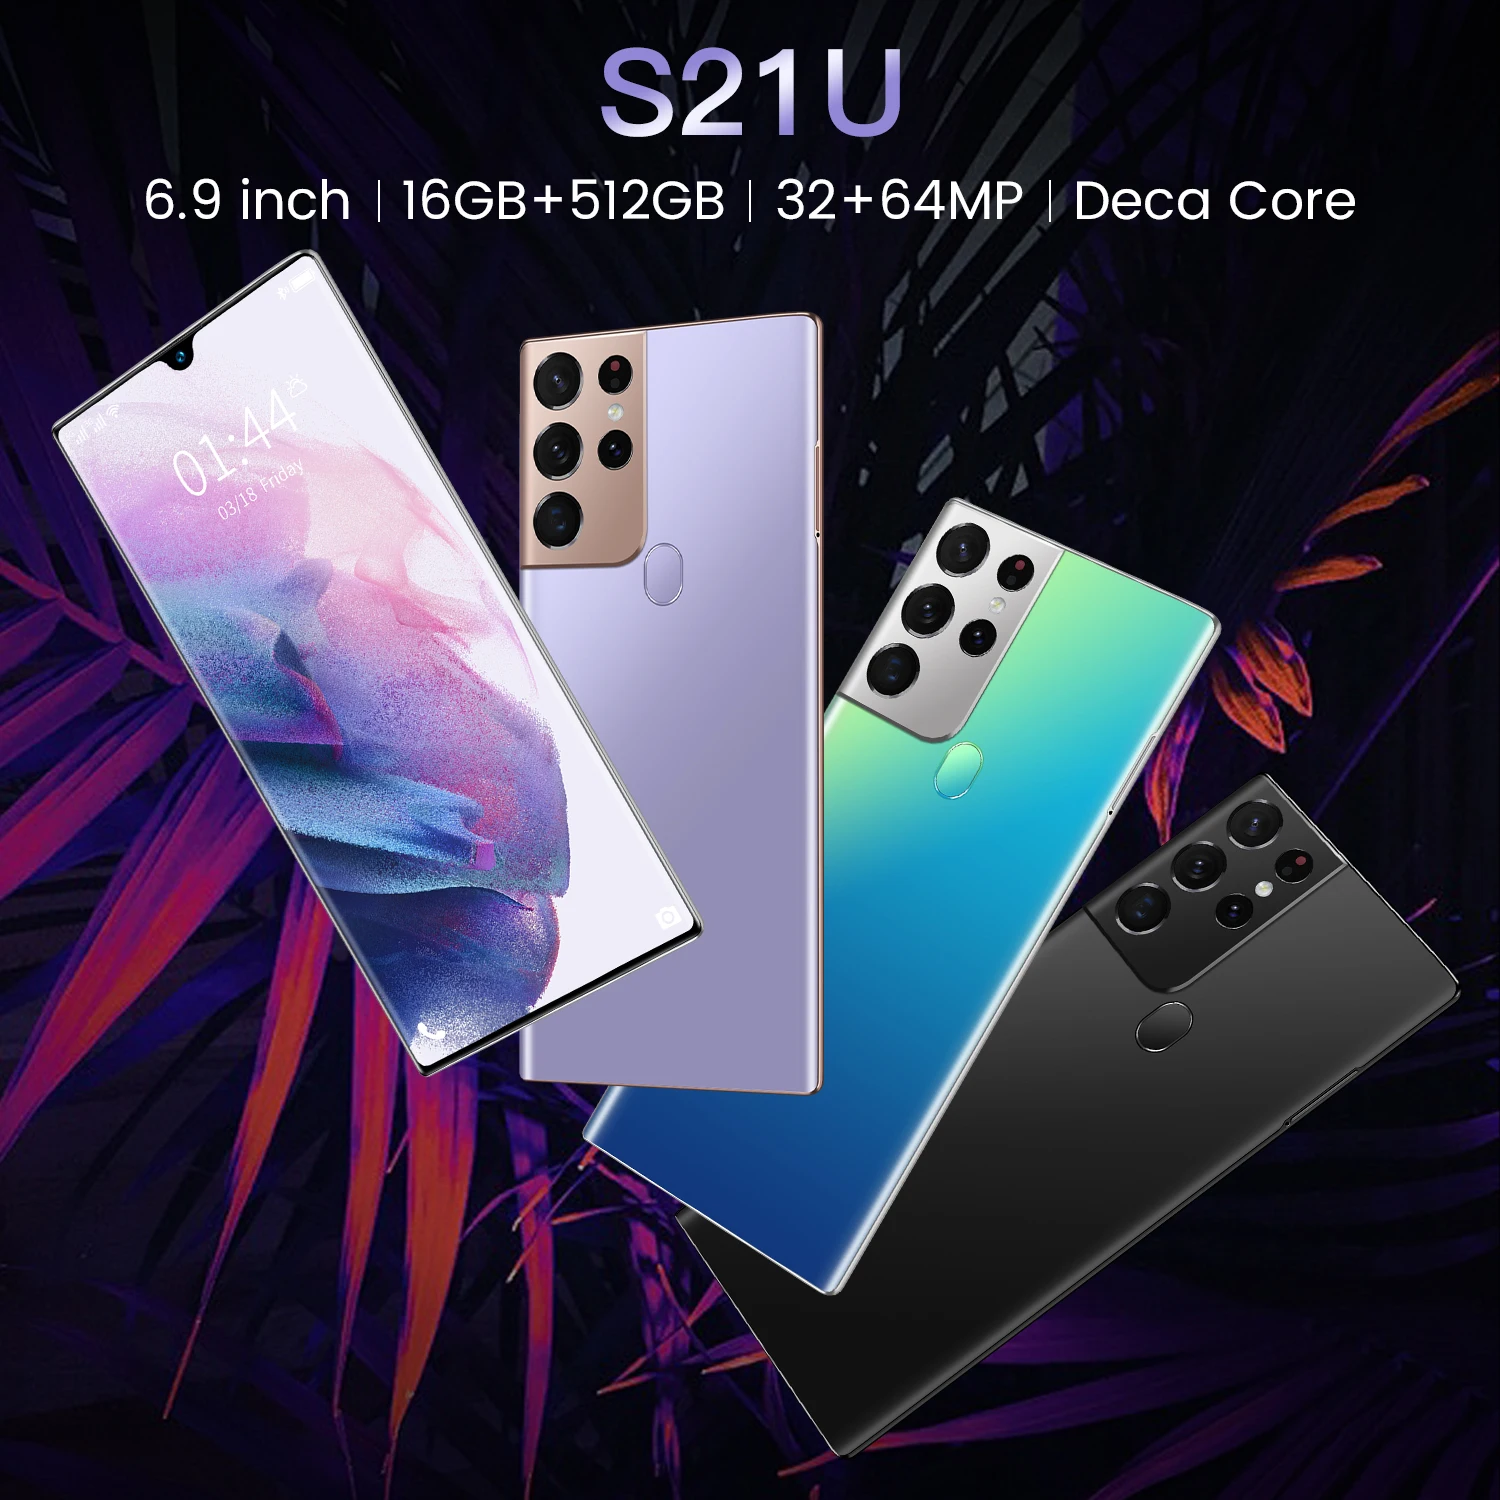 Naujausia Pasaulio Versija S21U 6.9 Colių Smartfon, Daca Core 16+512 GB 32+64MP Su Full Screen Dual SIM Dvejopo Laukimo mobilusis Telefonas